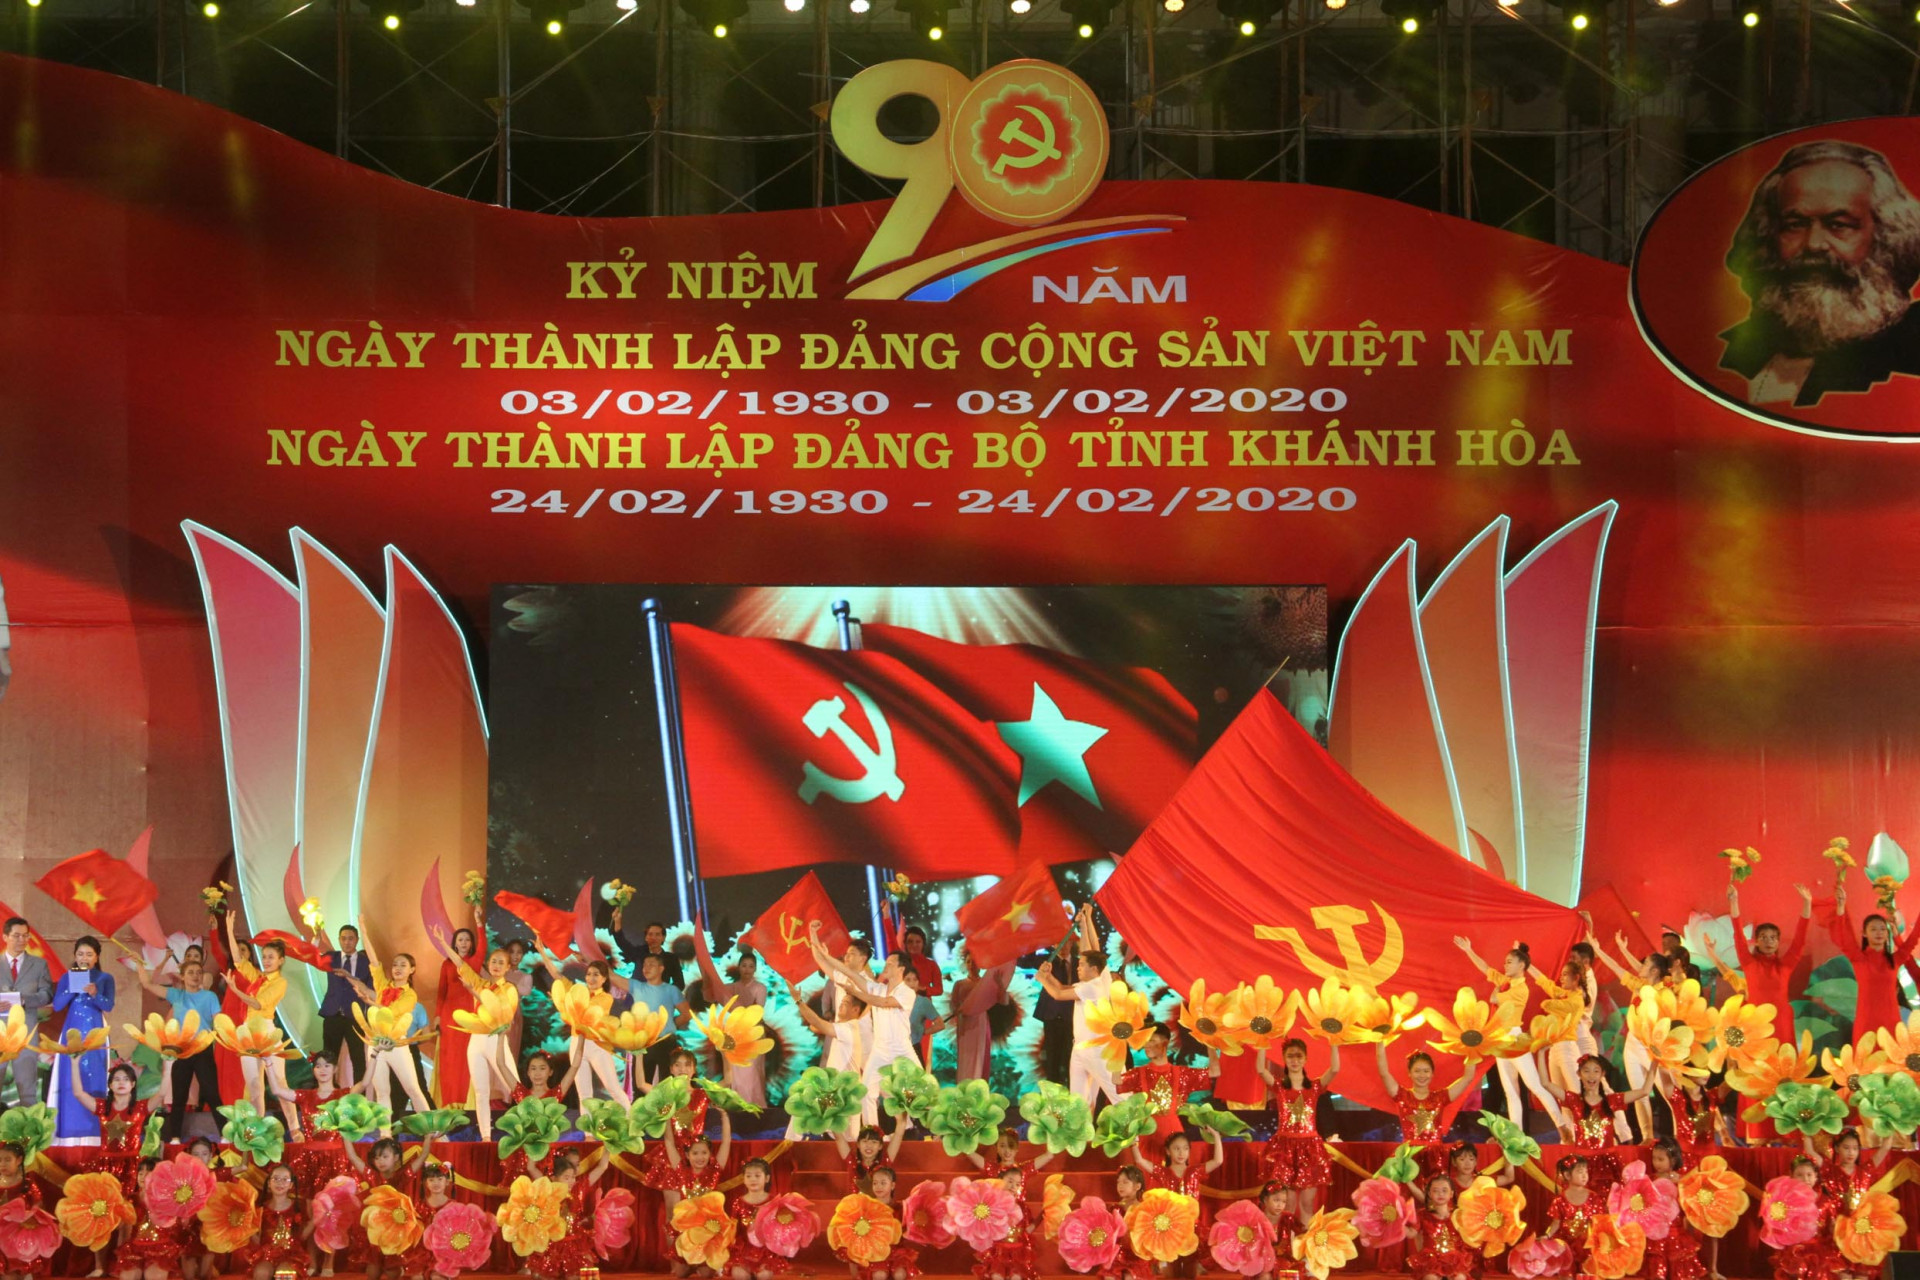 Chương trình nghệ thuật chào mừng 90 năm Ngày thành lập Đảng cộng sản Việt Nam và Ngày thành lập Đảng bộ tỉnh Khánh Hòa đã được tổ chức hoành tráng và ý nghĩa. 